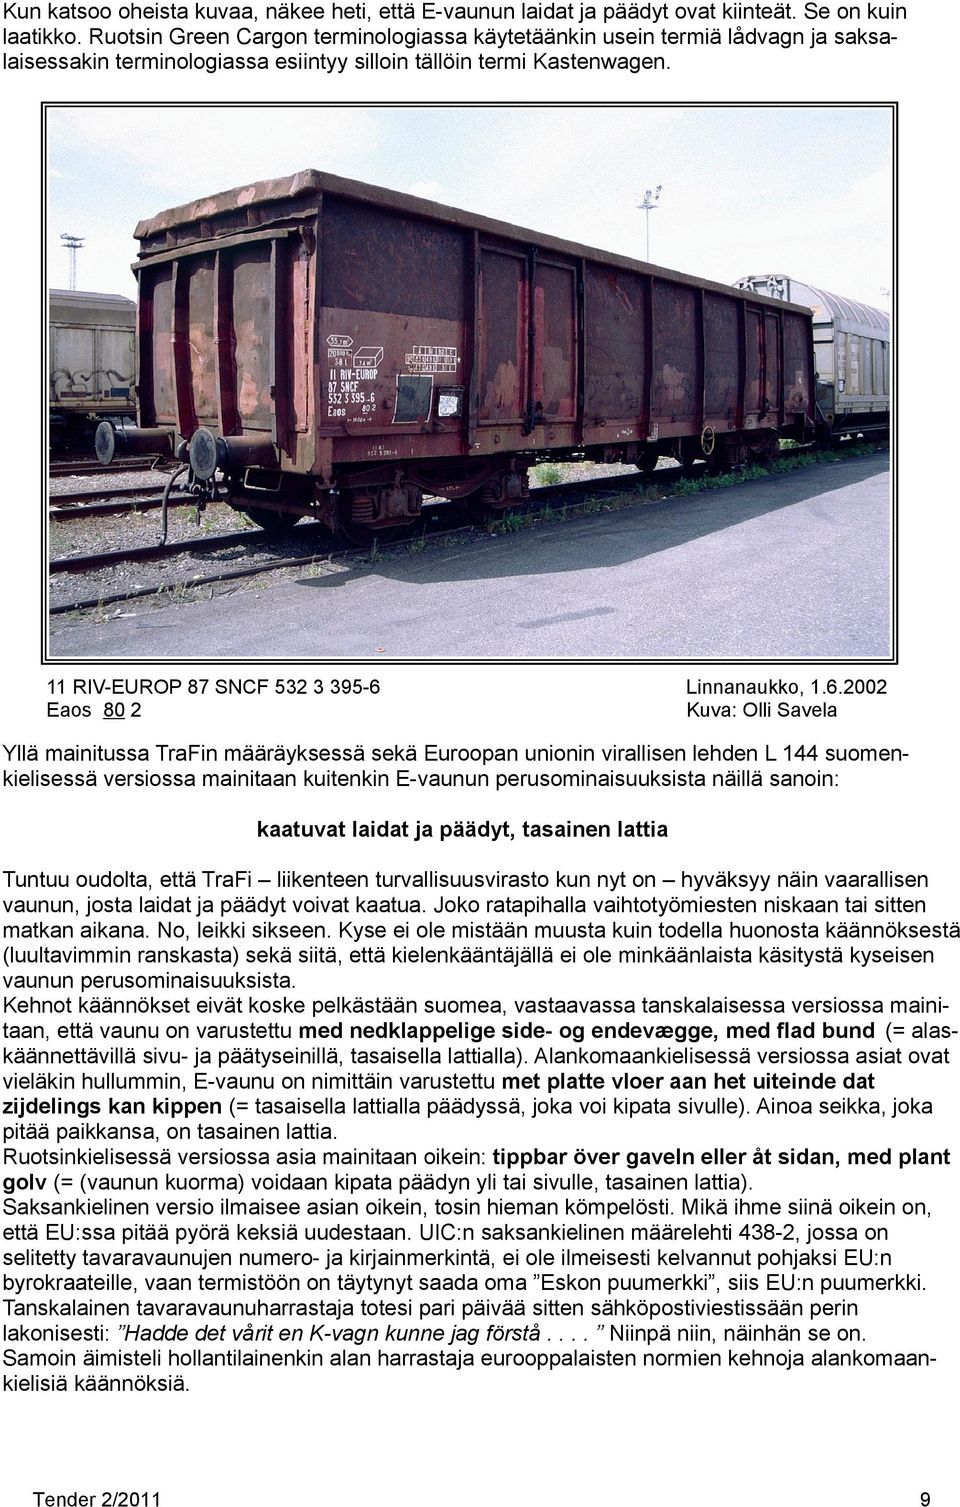 6.2002 Eaos 80 2 Kuva: Olli Savela Yllä mainitussa TraFin määräyksessä sekä Euroopan unionin virallisen lehden L 144 suomenkielisessä versiossa mainitaan kuitenkin E-vaunun perusominaisuuksista